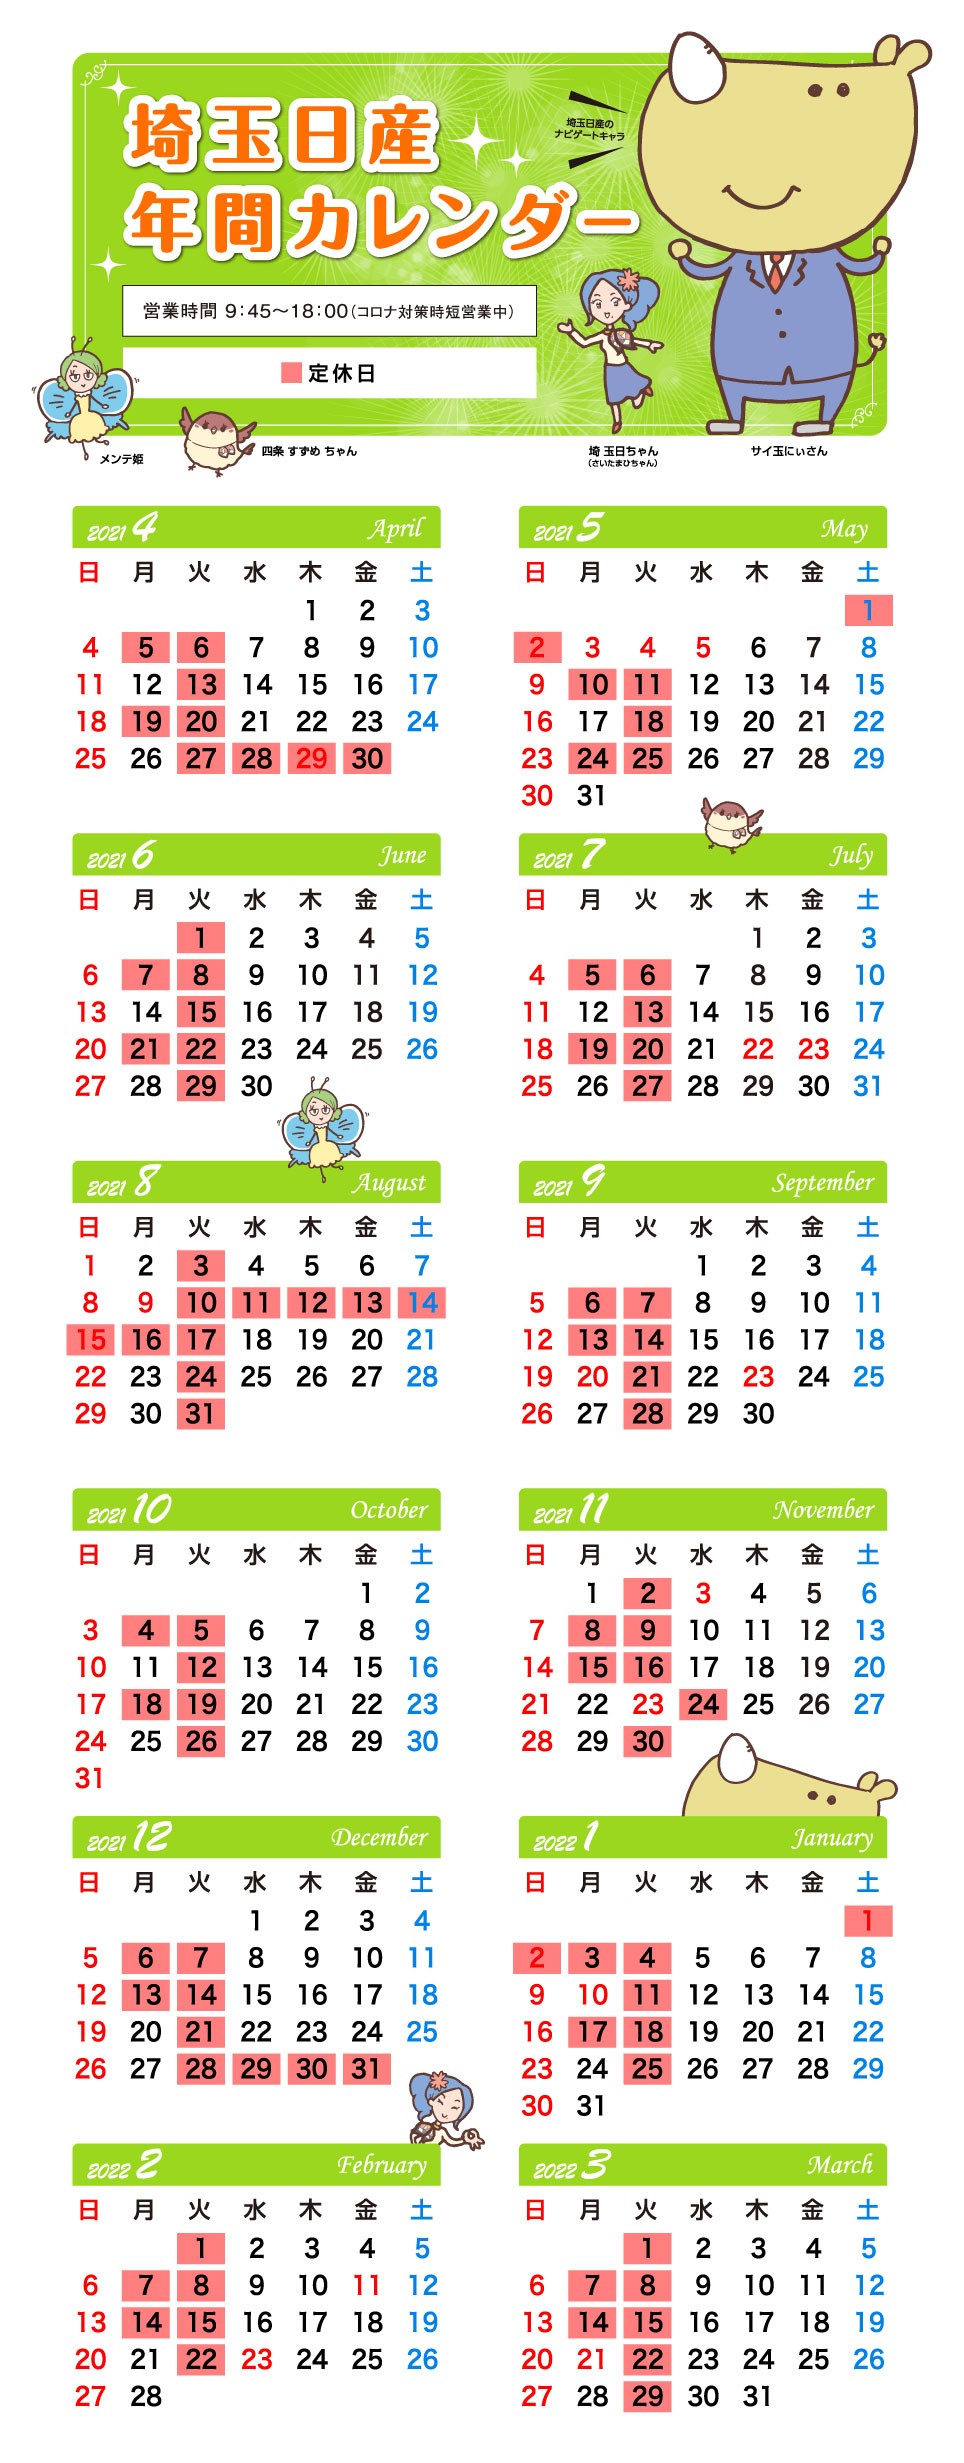 埼玉日産自動車株式会社 営業日カレンダー